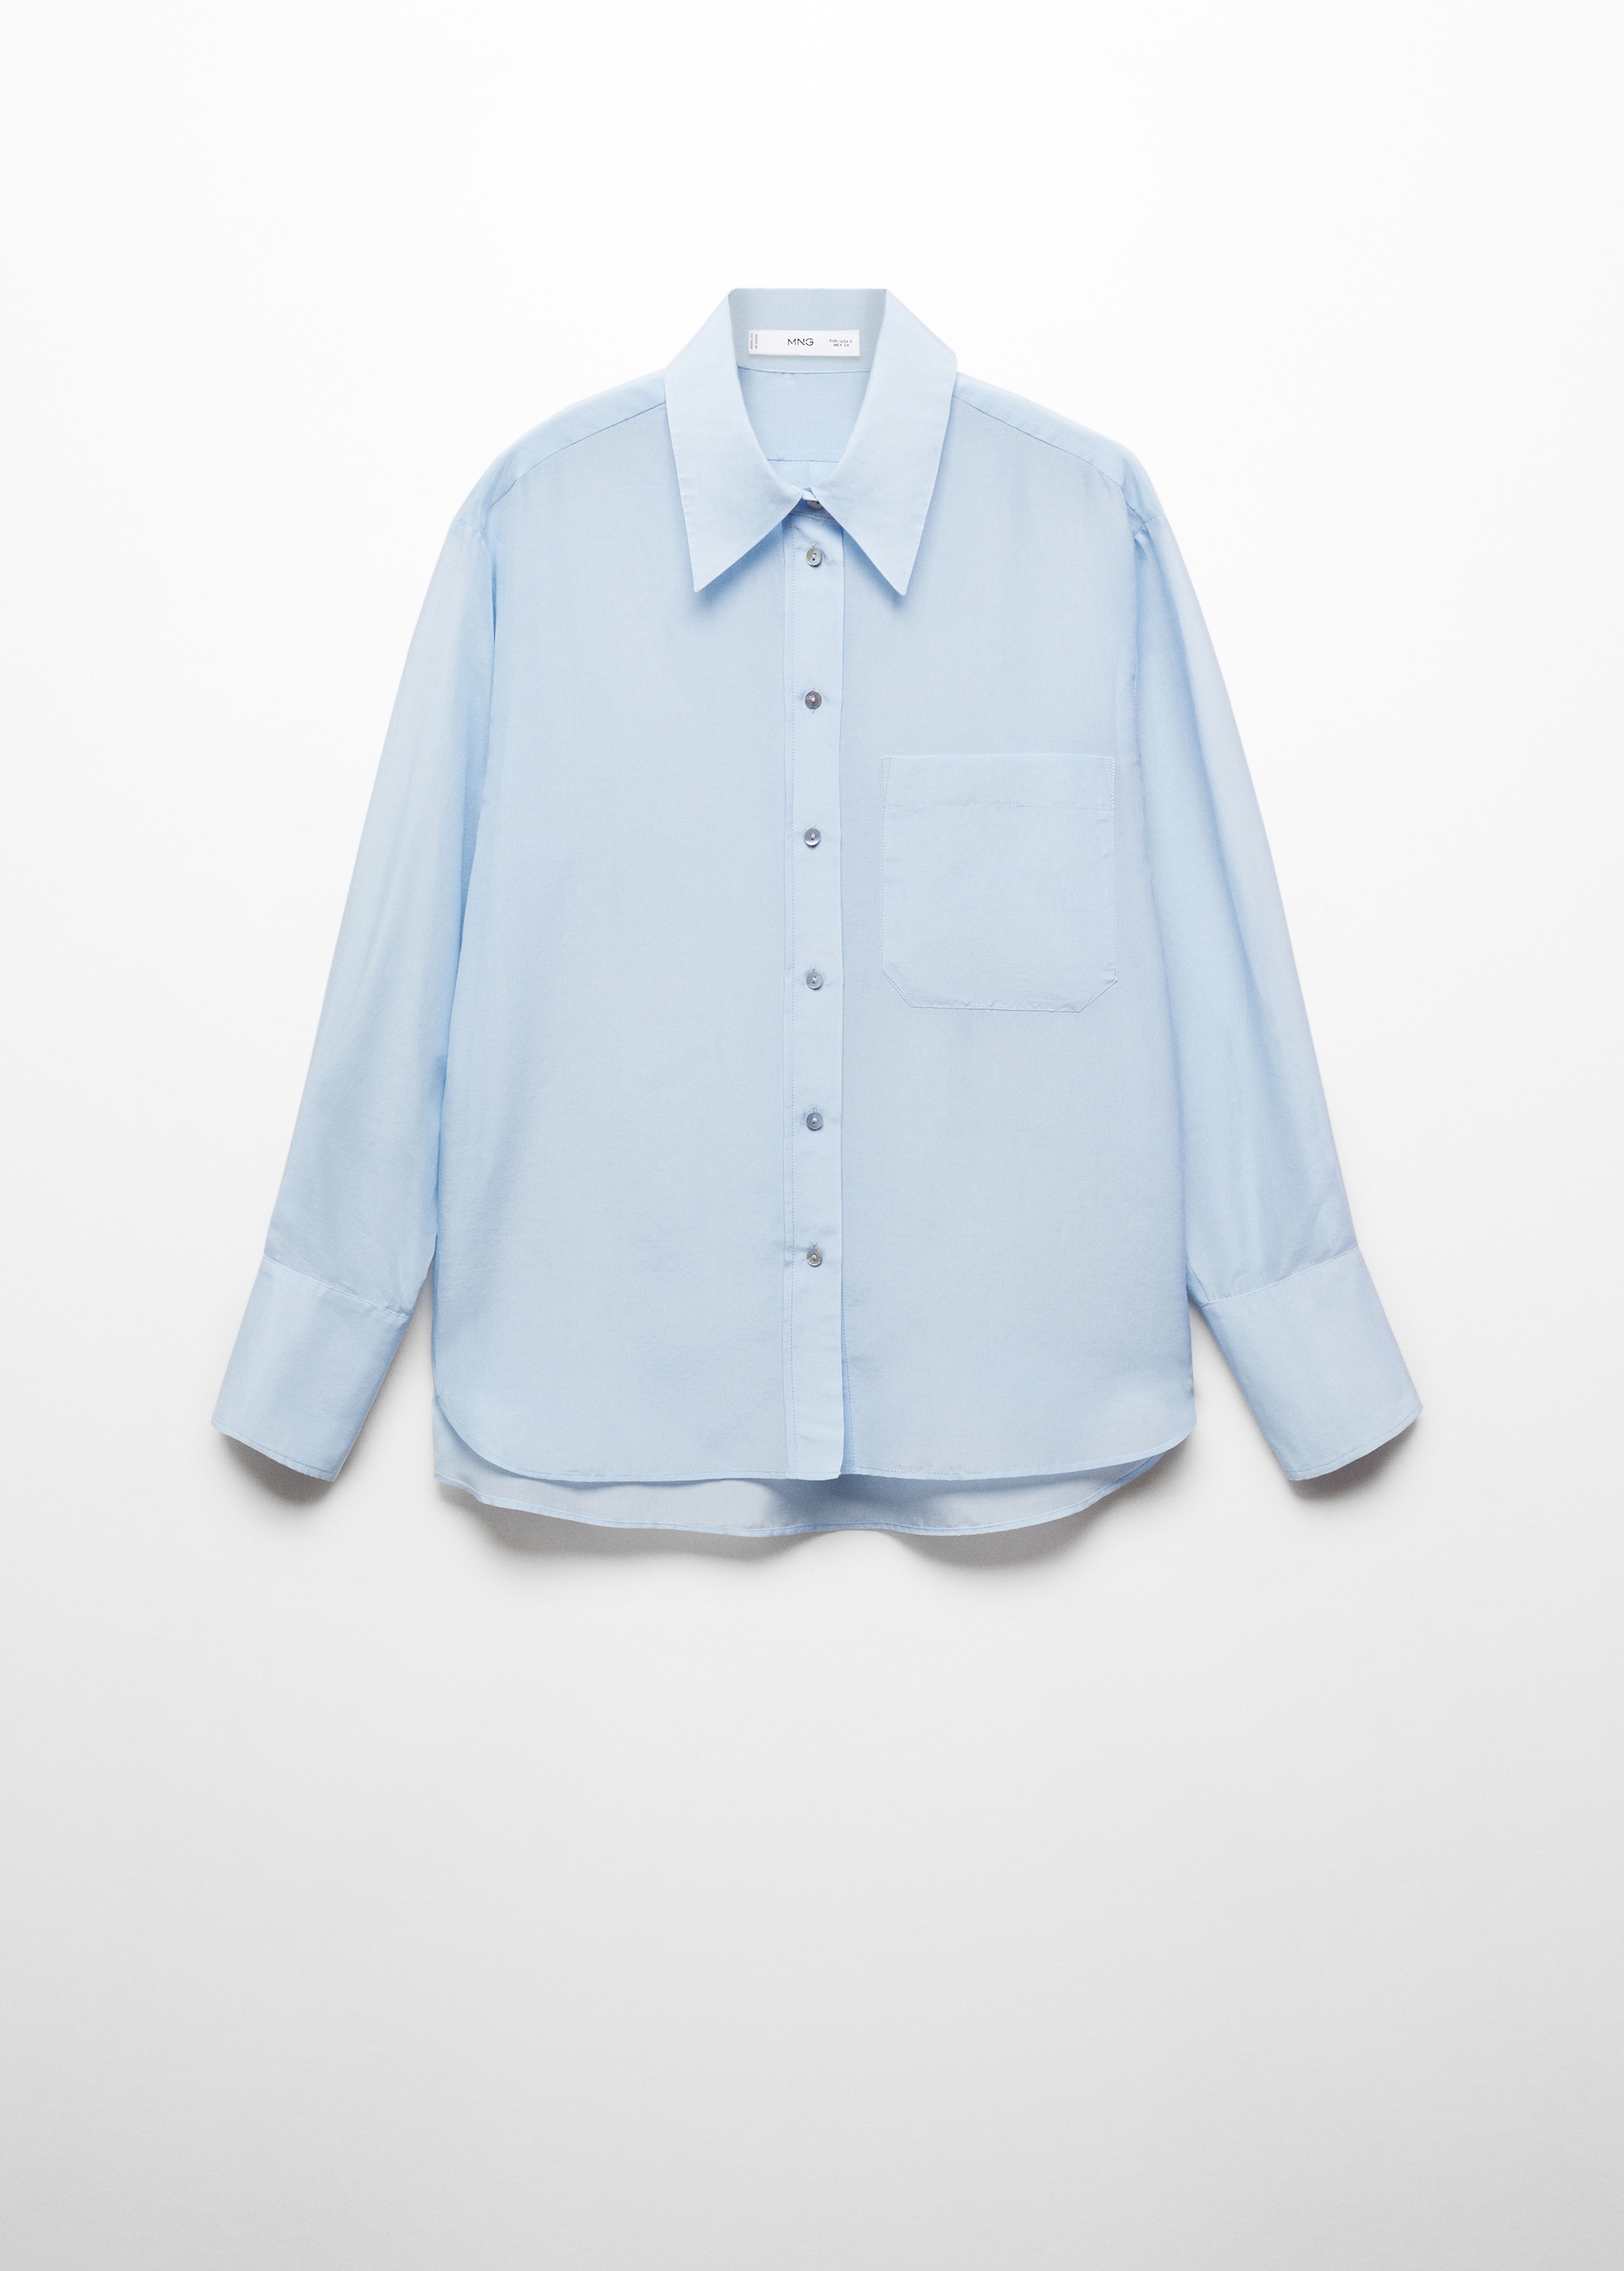 Camisa algodón seda oversize - Artículo sin modelo